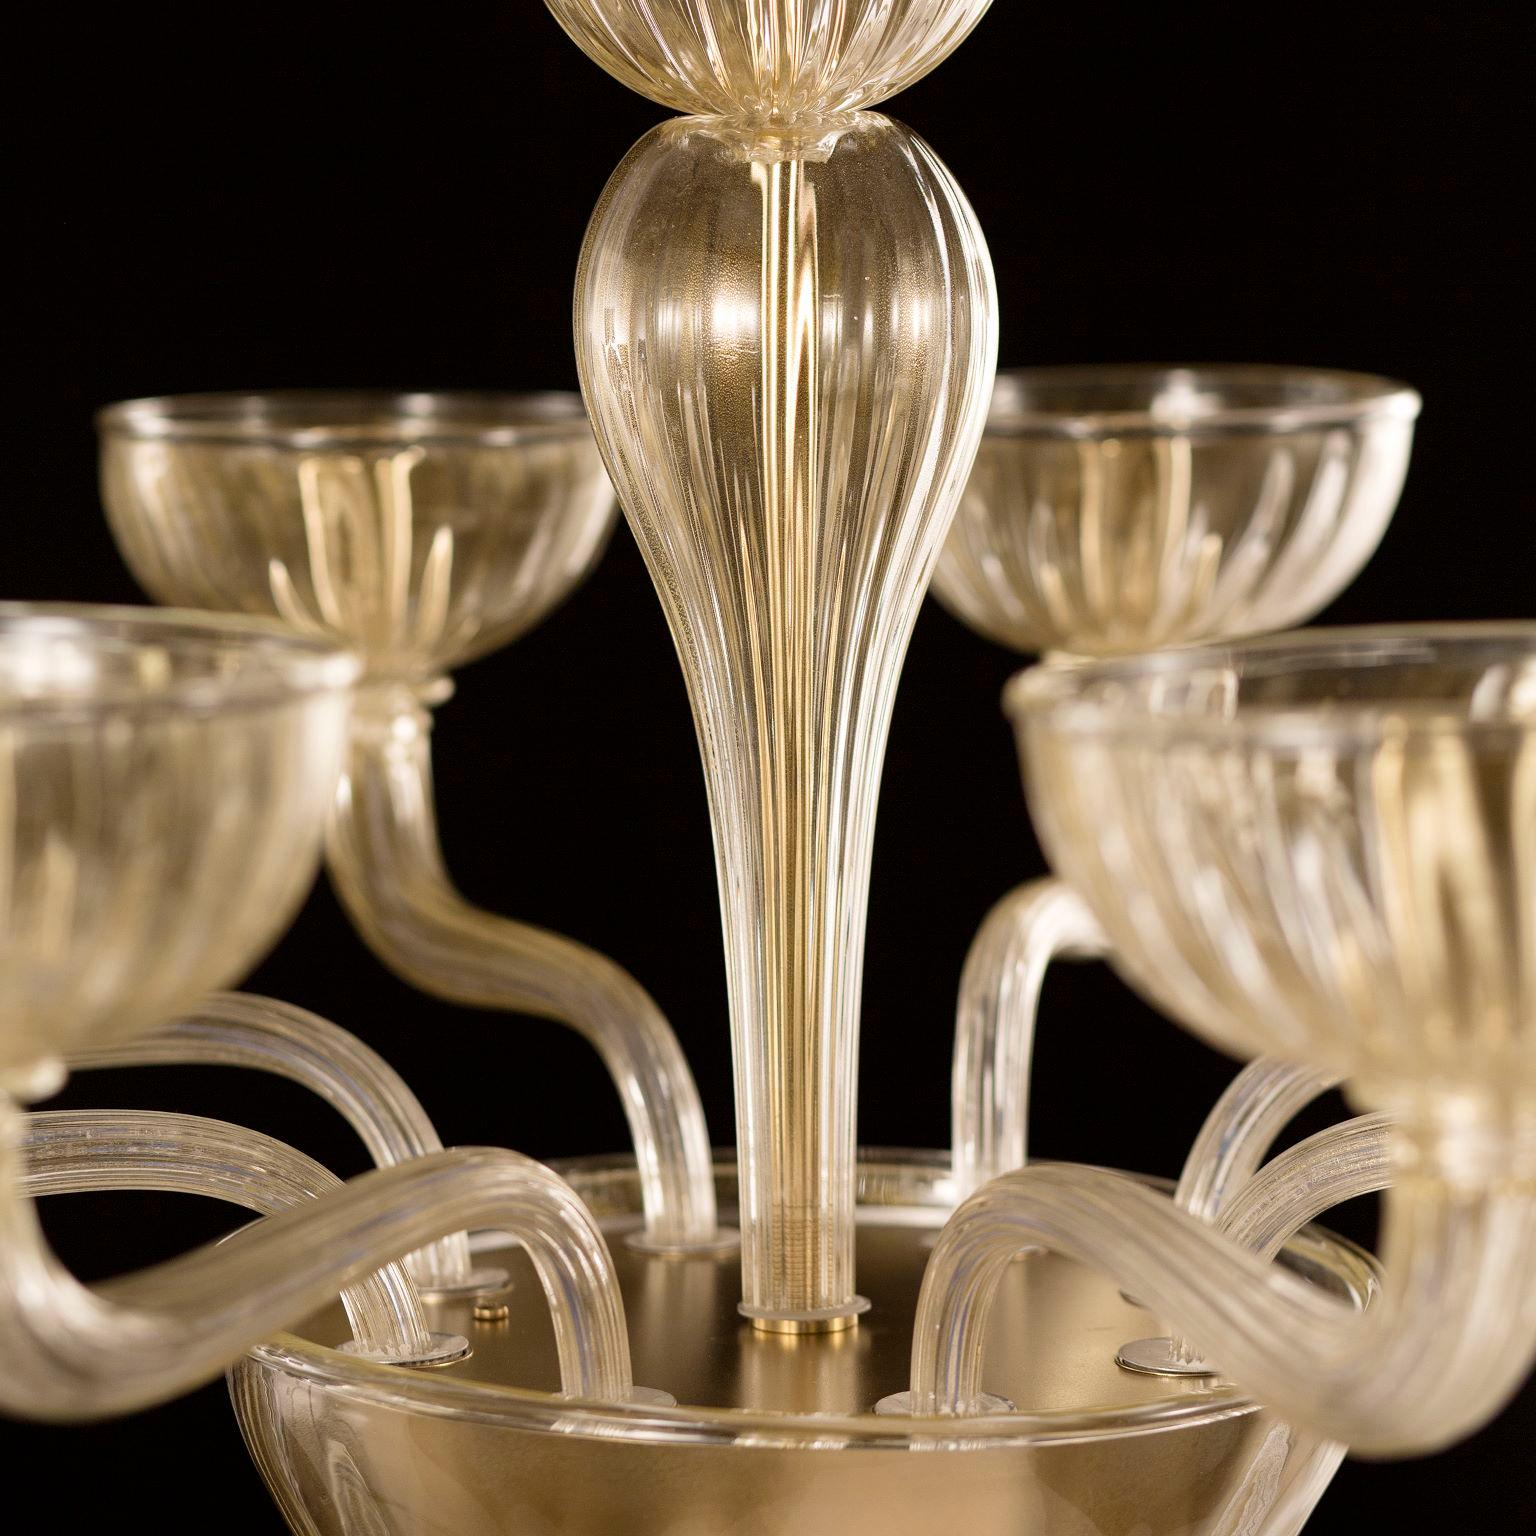 Lustre Edgar, 8 lumières, feuille d'or rigadin verre de Murano par Multiforme
Le lustre en verre de Murano Edgar est l'un des lustres de nos collections qui se distingue par ses formes harmonieuses et équilibrées. Nous avons conçu un lustre à la